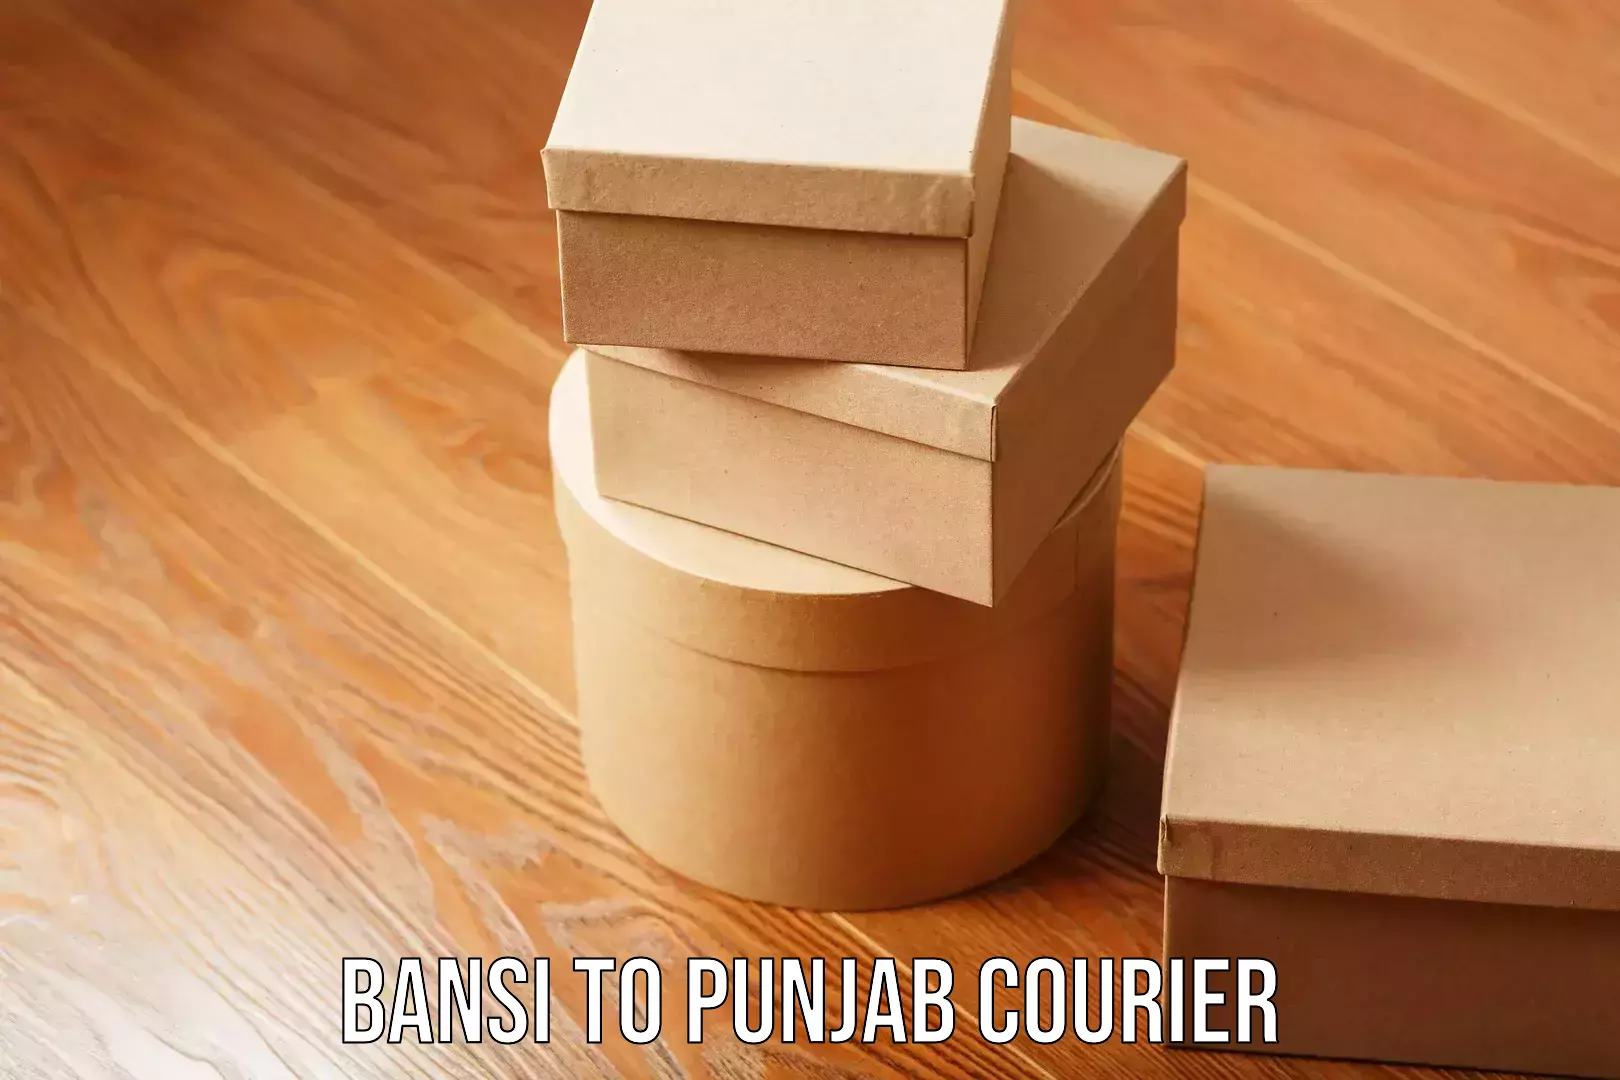 Urban courier service Bansi to Punjab